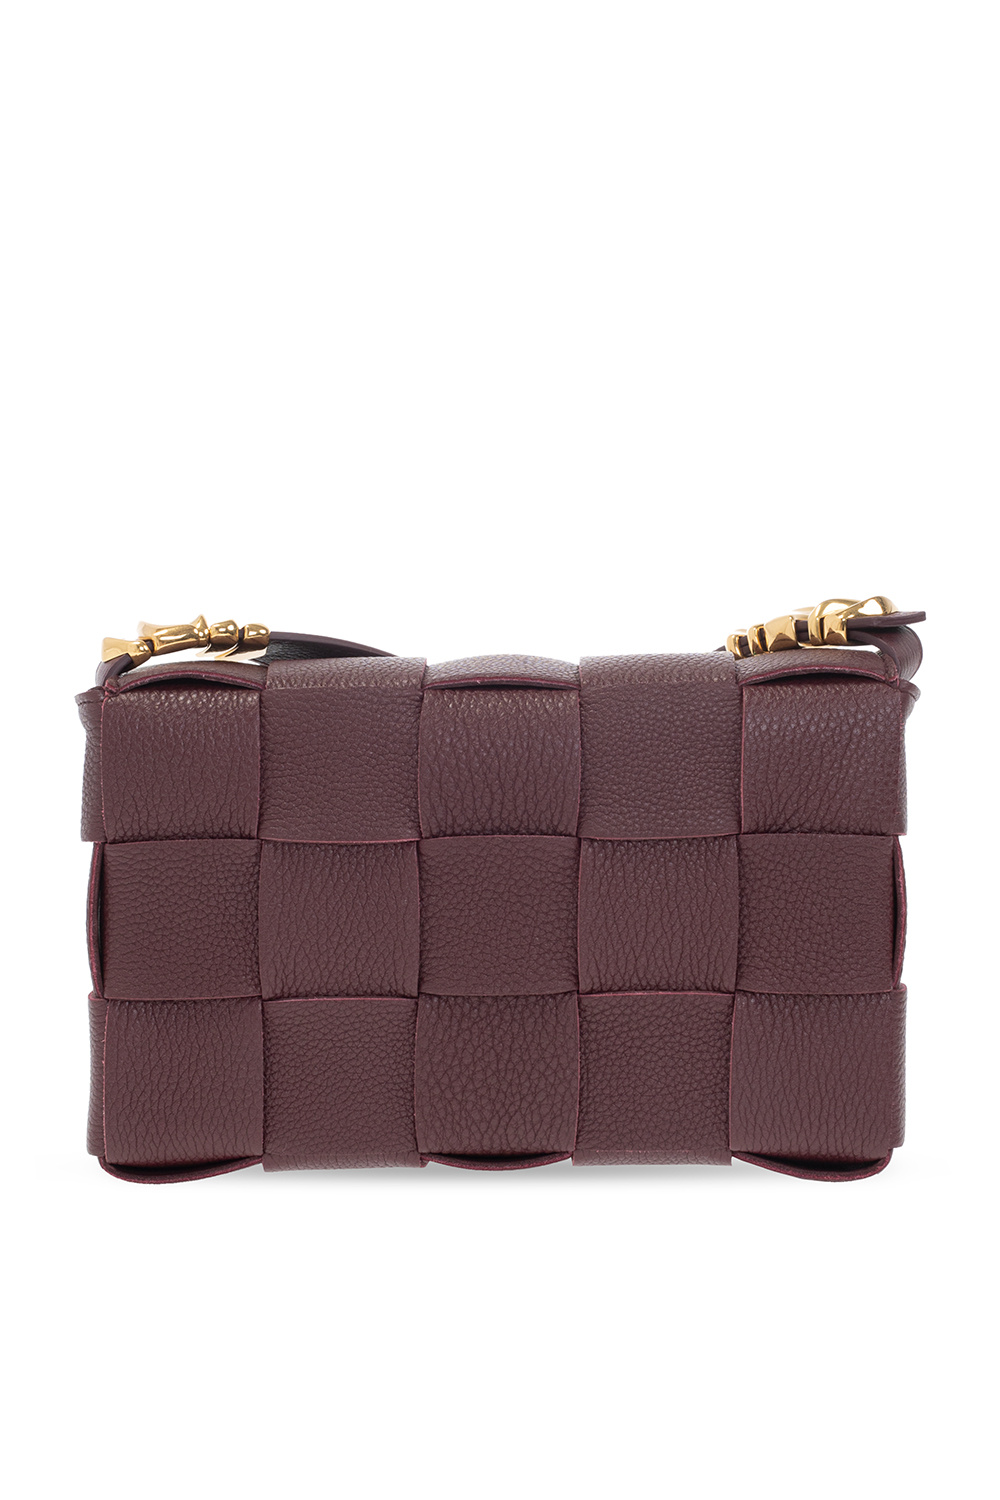 bottega strap Veneta ‘Cassette’ shoulder bag